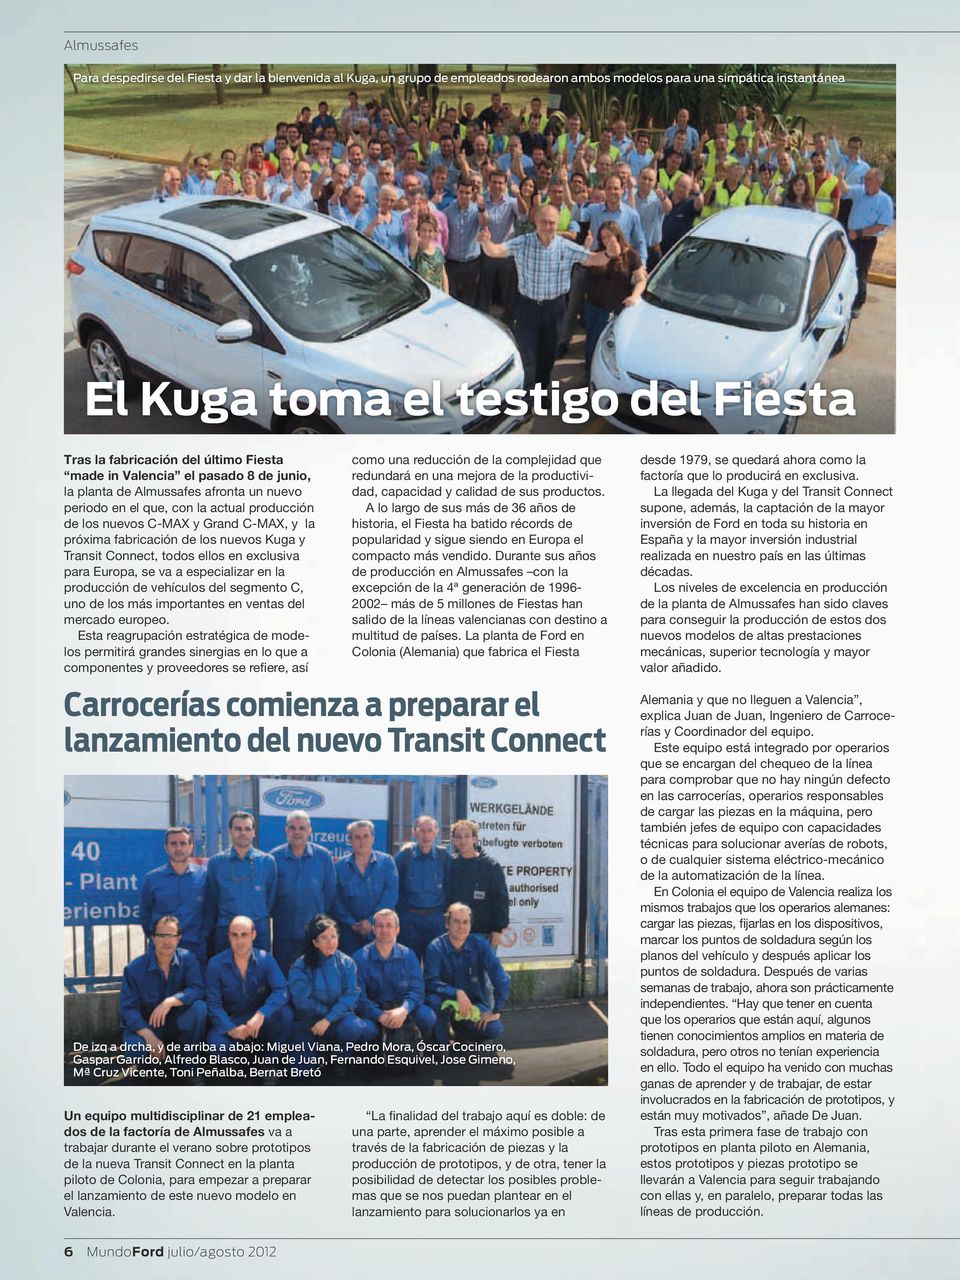 fabricación de los nuevos Kuga y Transit Connect, todos ellos en exclusiva para Europa, se va a especializar en la producción de vehículos del segmento C, uno de los más importantes en ventas del